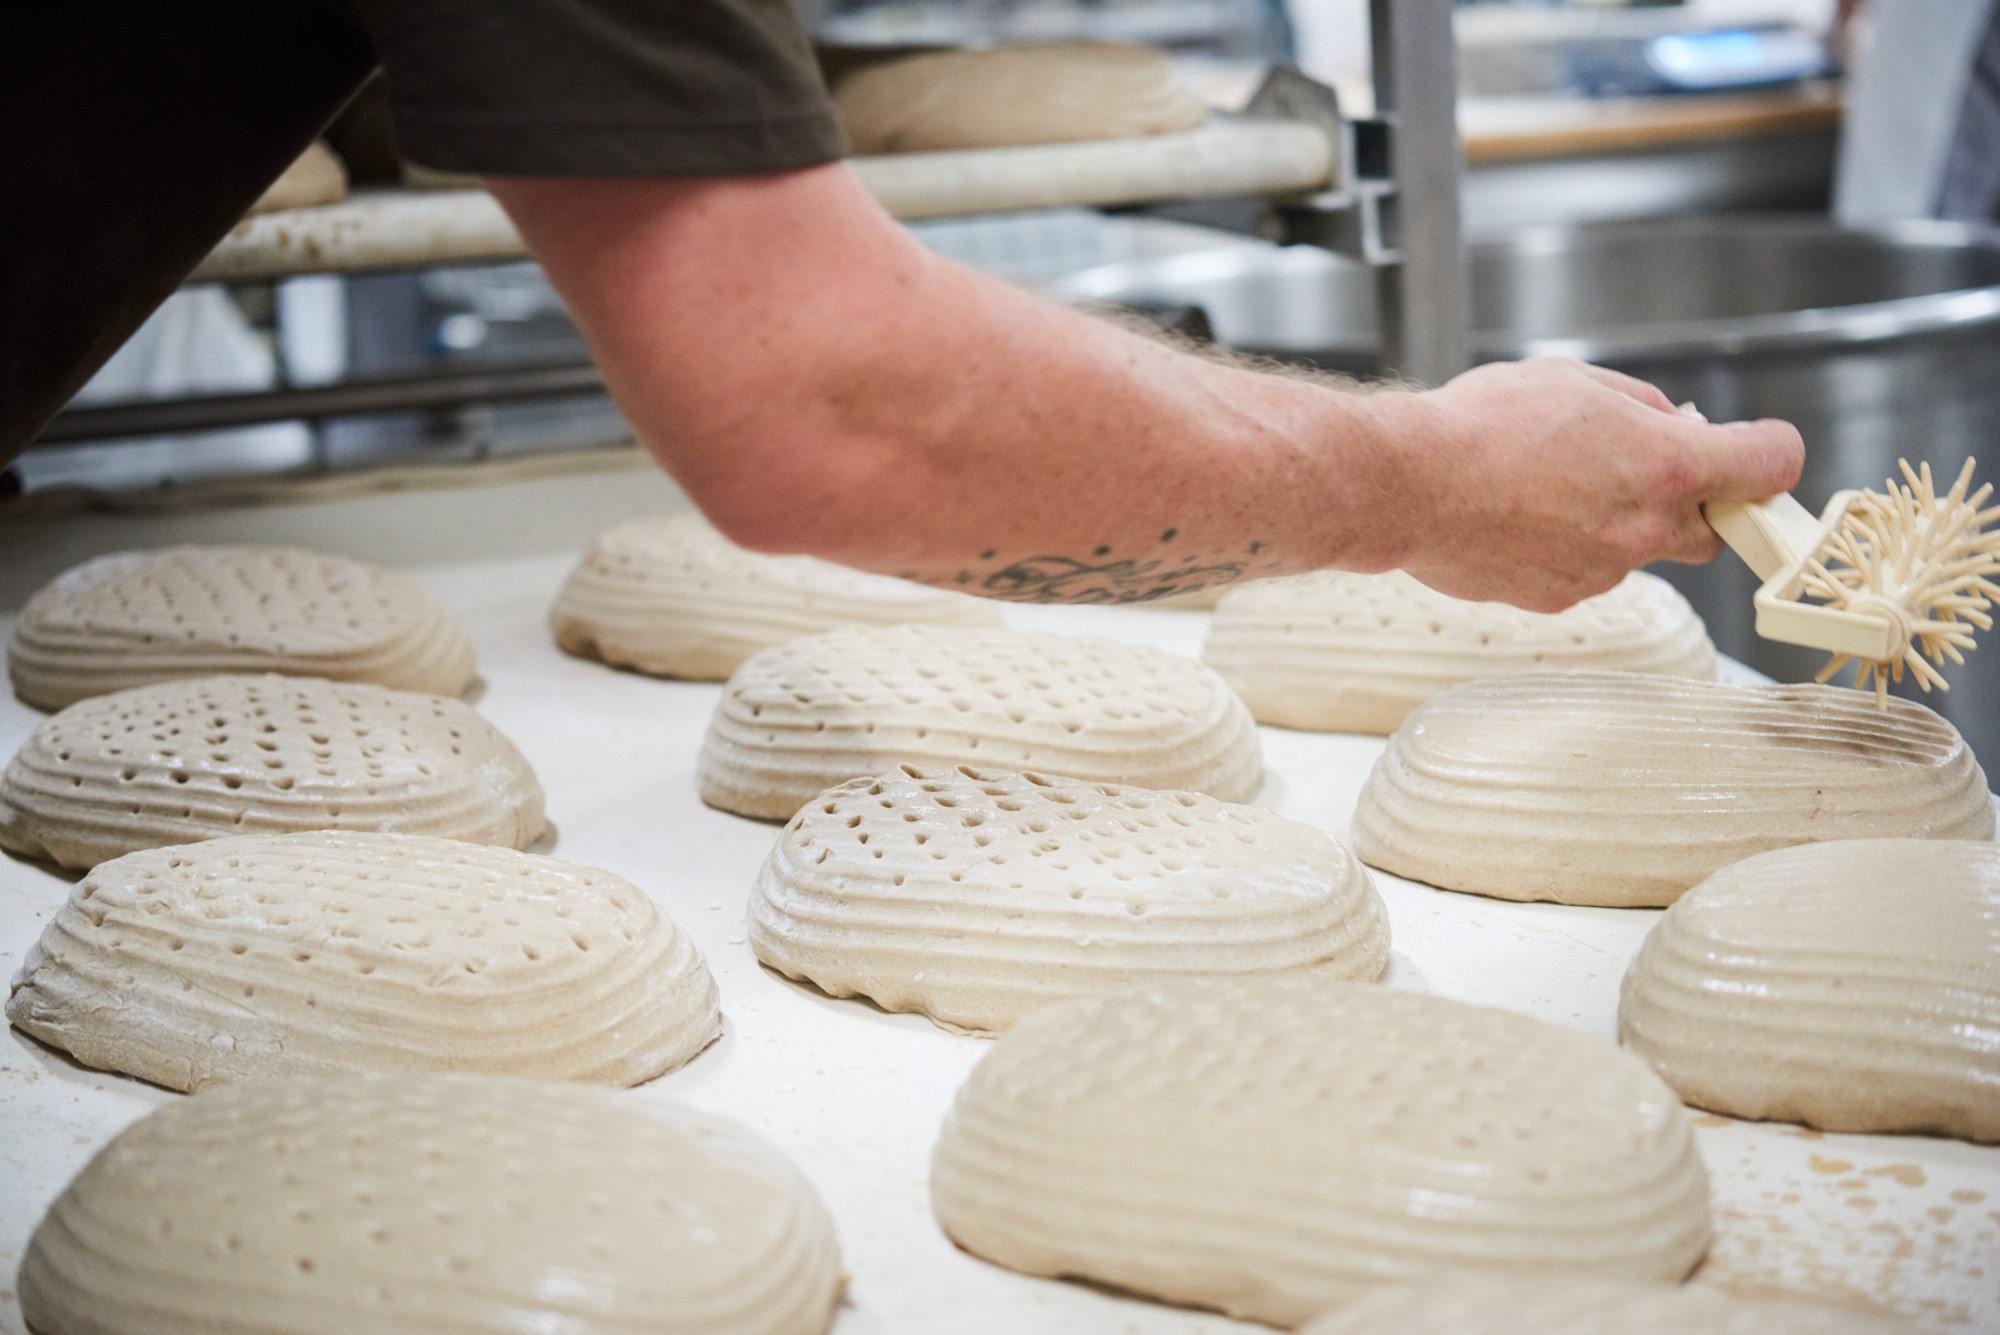 Der Duft spielt bei dem Beruf des Bäckers eine besondere Rolle. (Foto: Bäckerei Wippler)